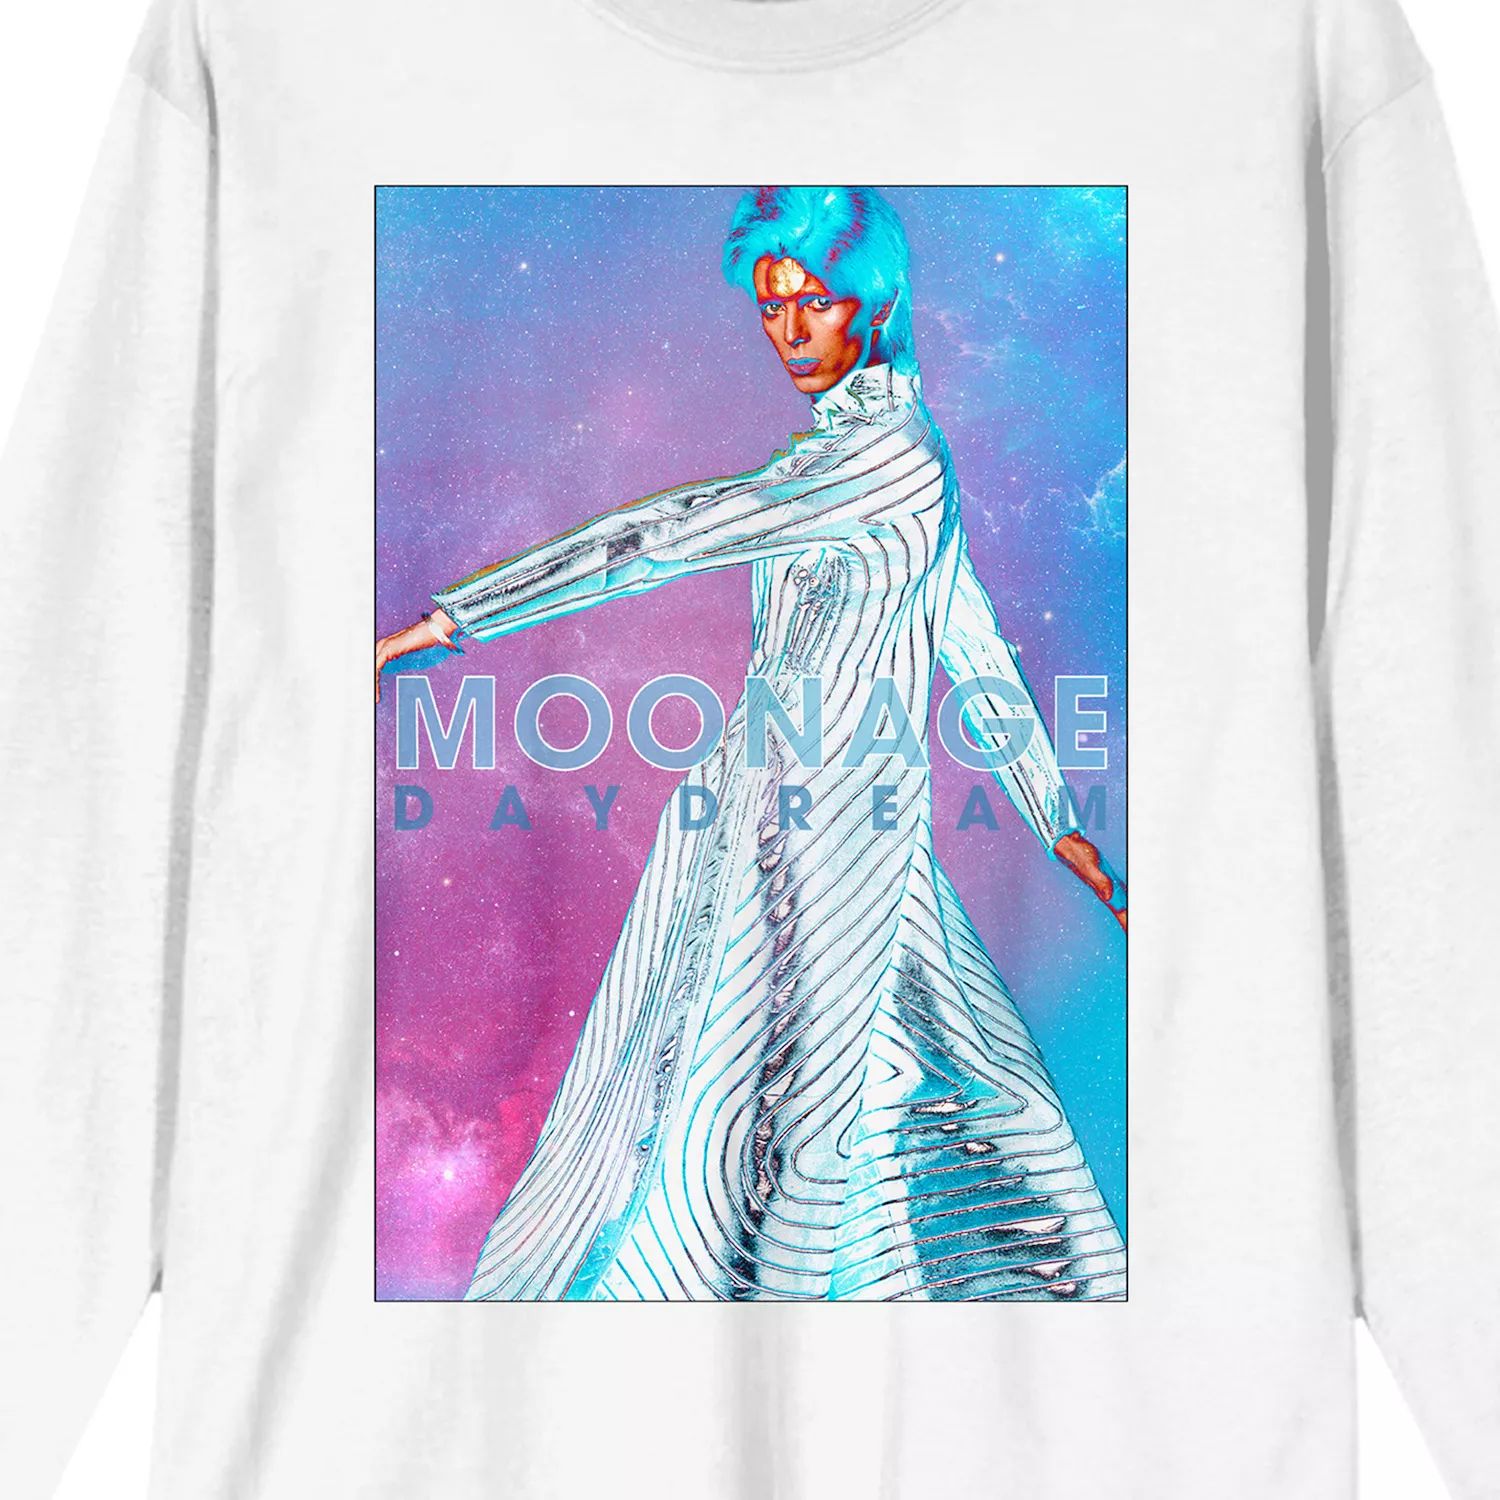 Мужская футболка с цветным дымчатым рисунком David Bowie Moonage Daydream Licensed Character